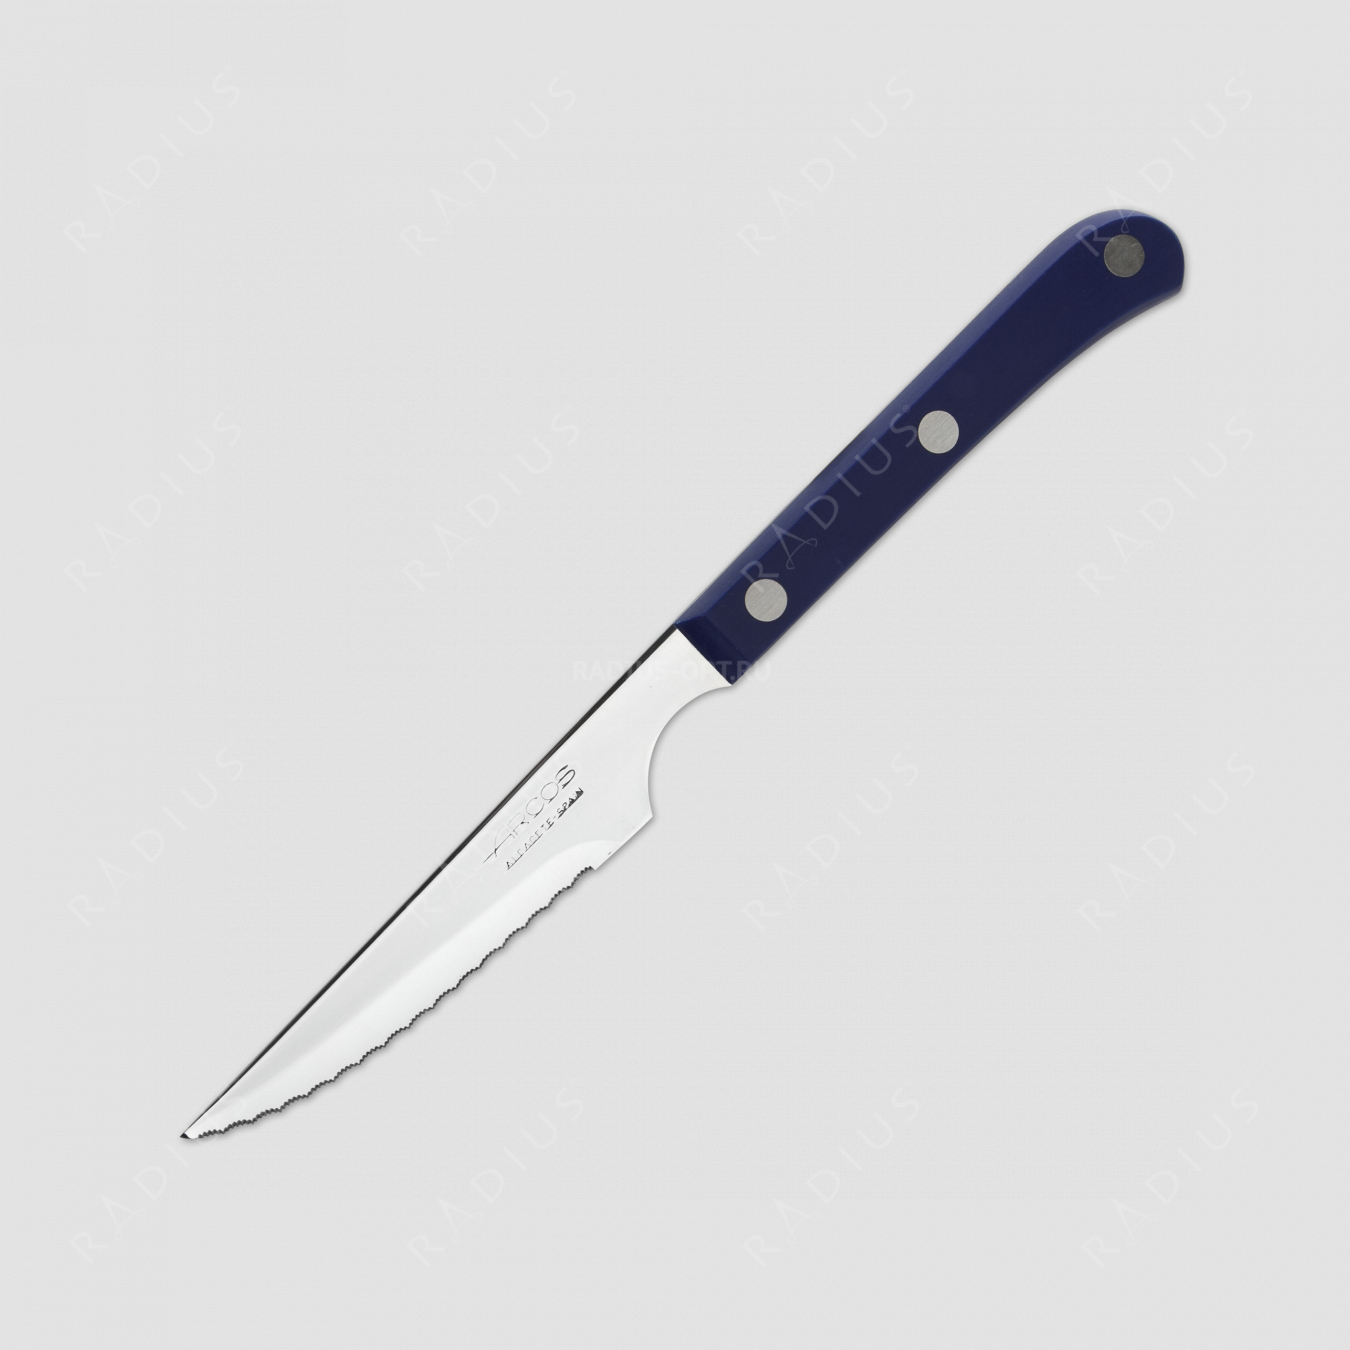 Нож кухонный для стейка 11,5 см, рукоять синяя, серия Mesa, ARCOS, Испания